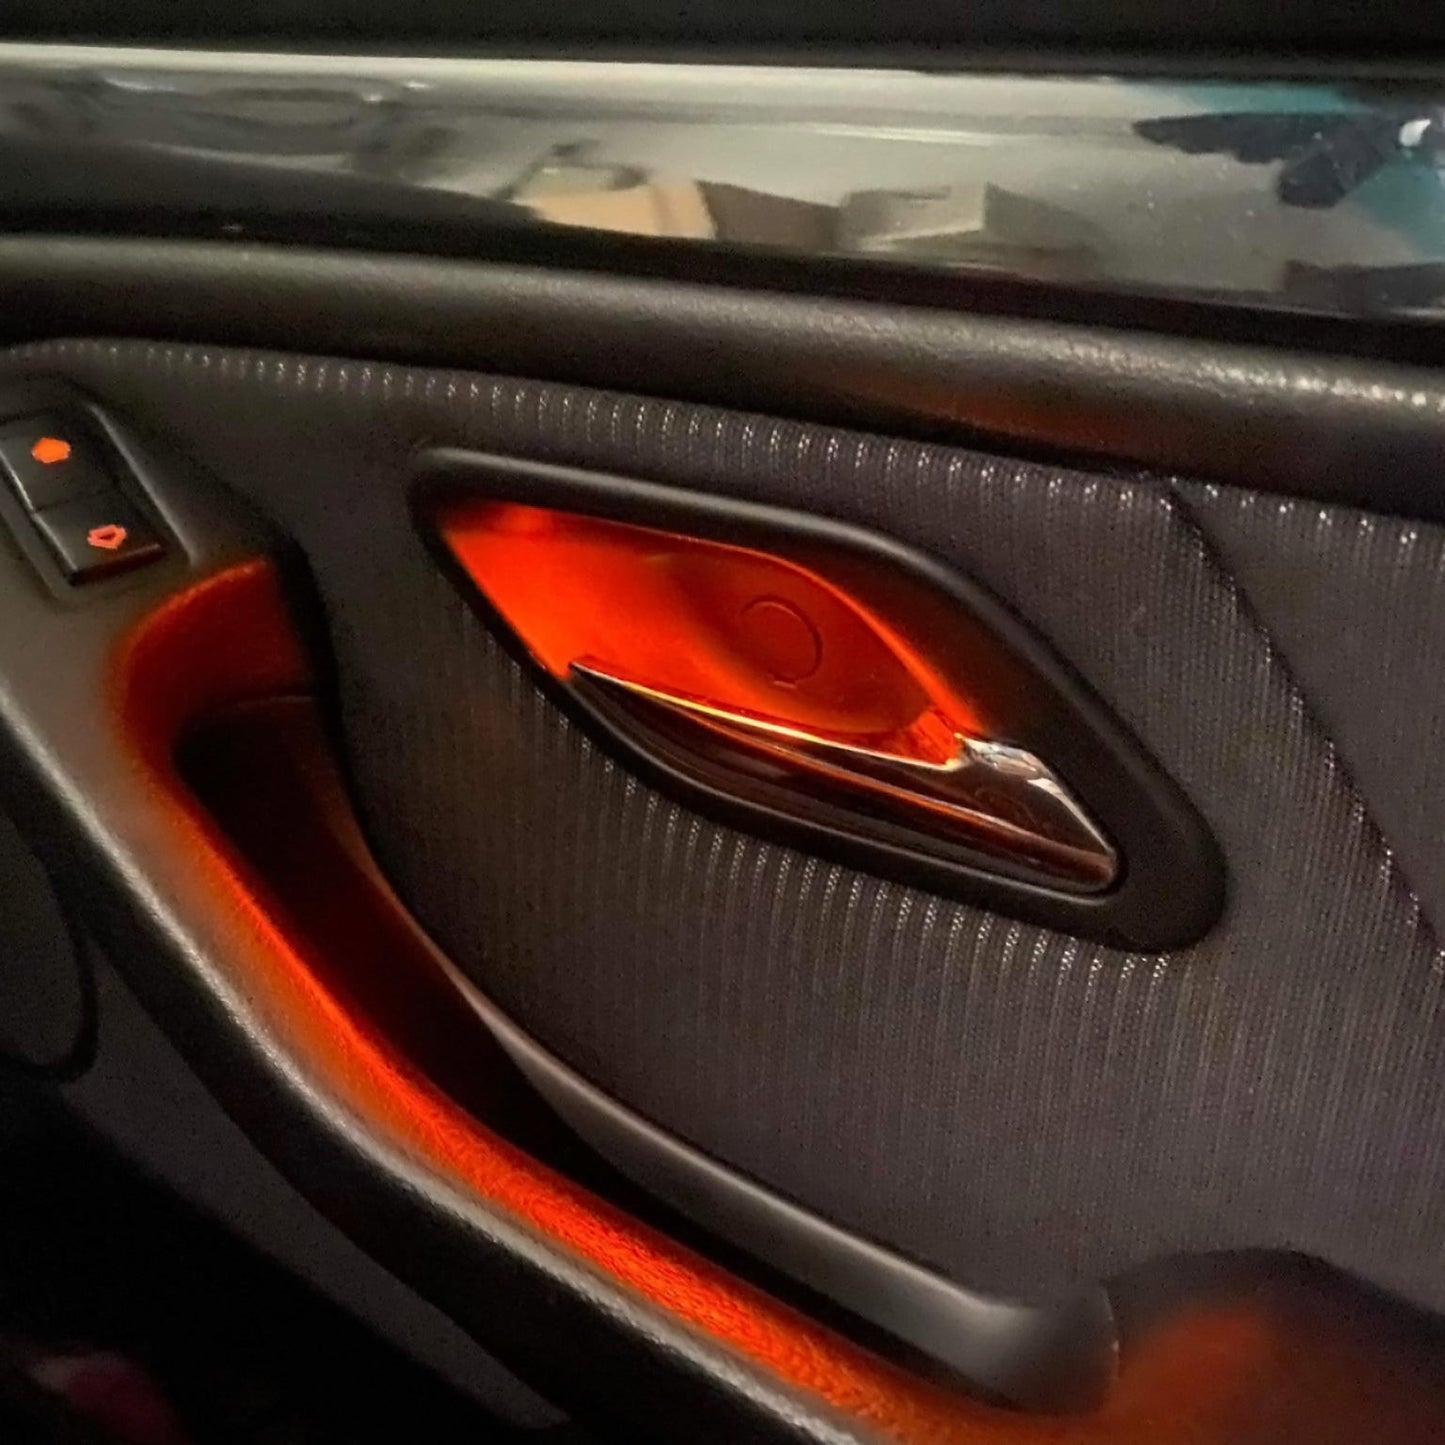 مقابض أبواب مضيئة لسيارة BMW E39 (جديد)